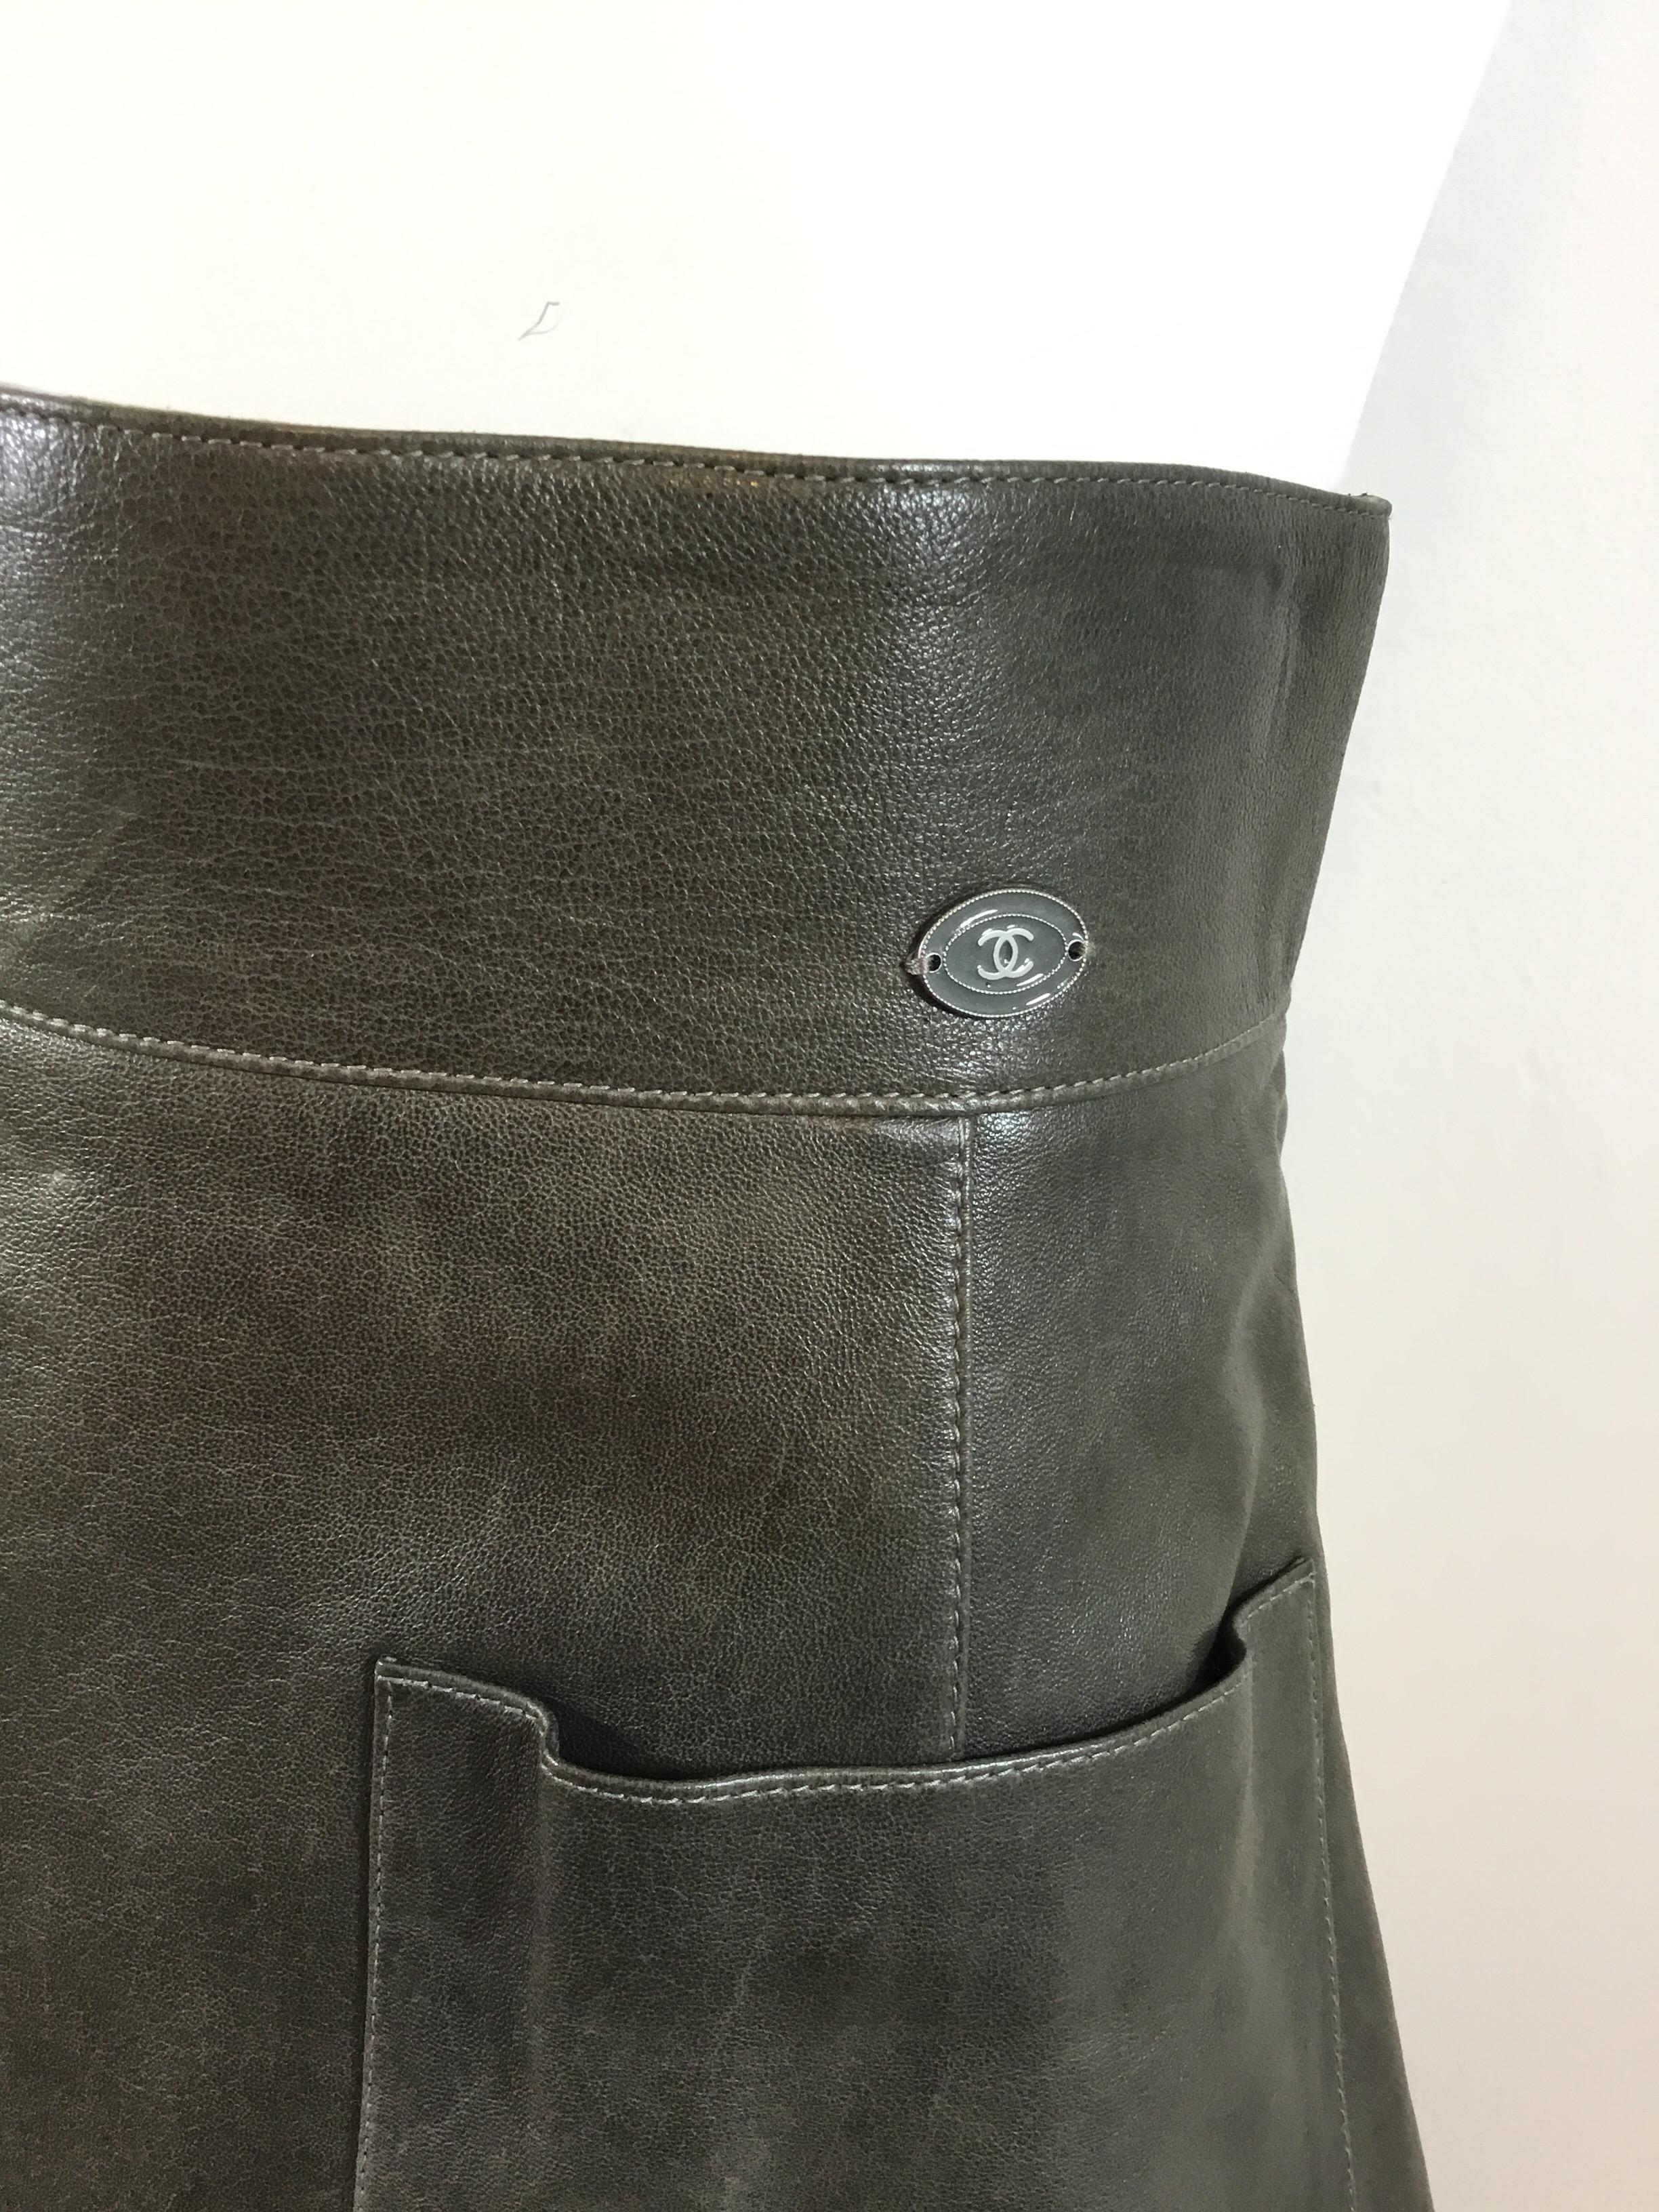 sandro leather skirt